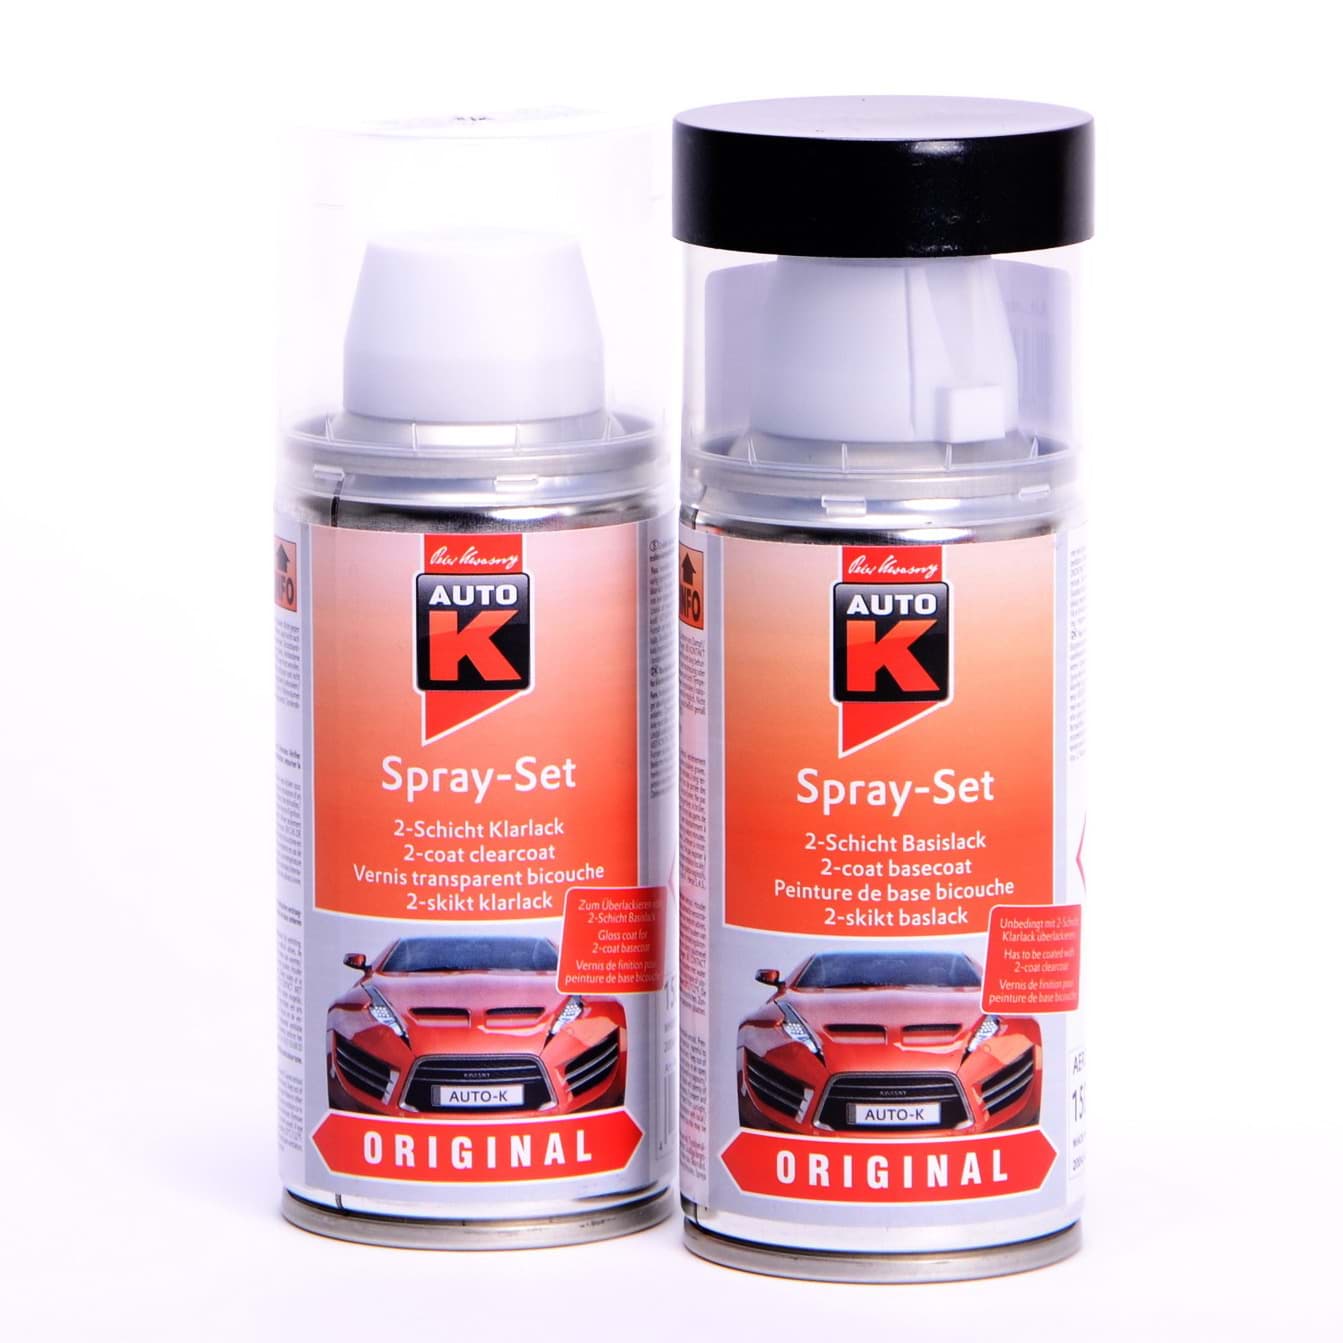 Afbeelding van Auto-K Spray-Set Autolack für Volkswagen, VW, Audi L90D Pastellweiss 20226